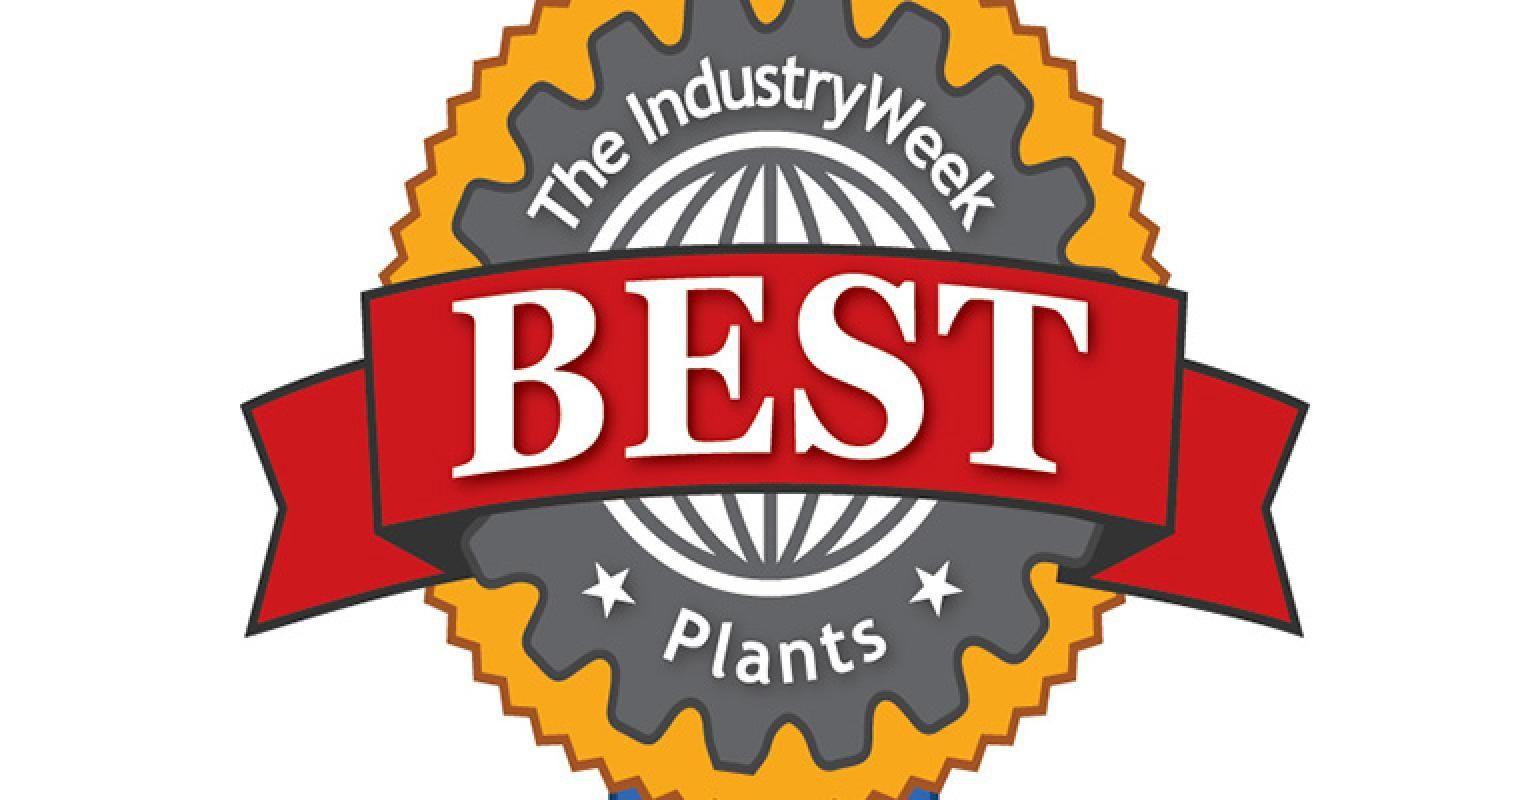 Plants Logo - IndustryWeek Names 2018 Best Plants Award Winners | Best ...